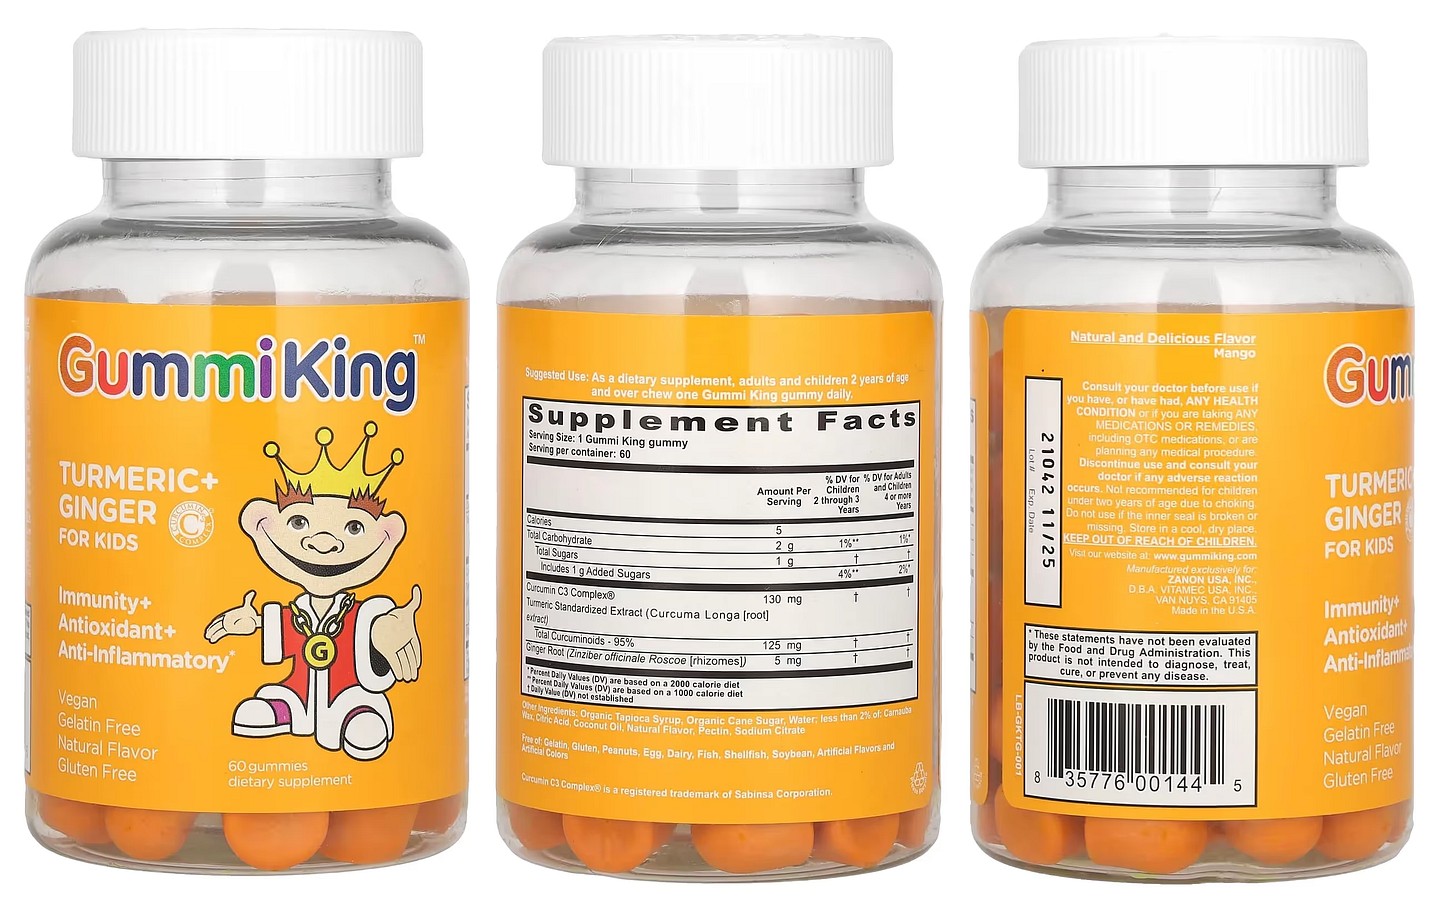 GummiKing, Turmeric + Ginger For Kids packaging